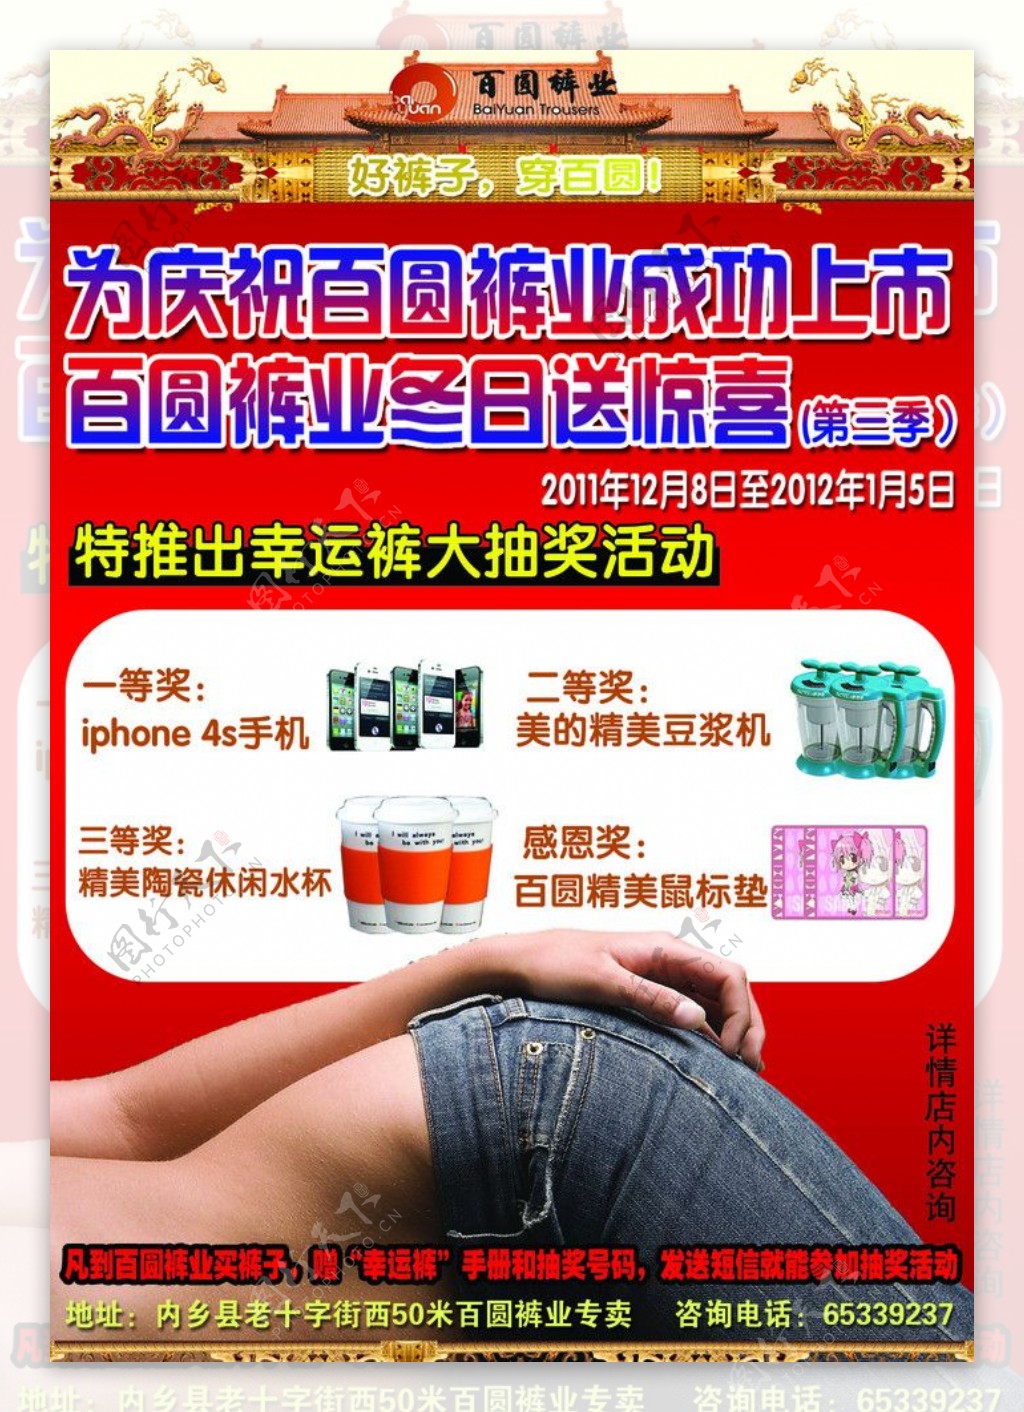 百圆裤业宣传广告图片